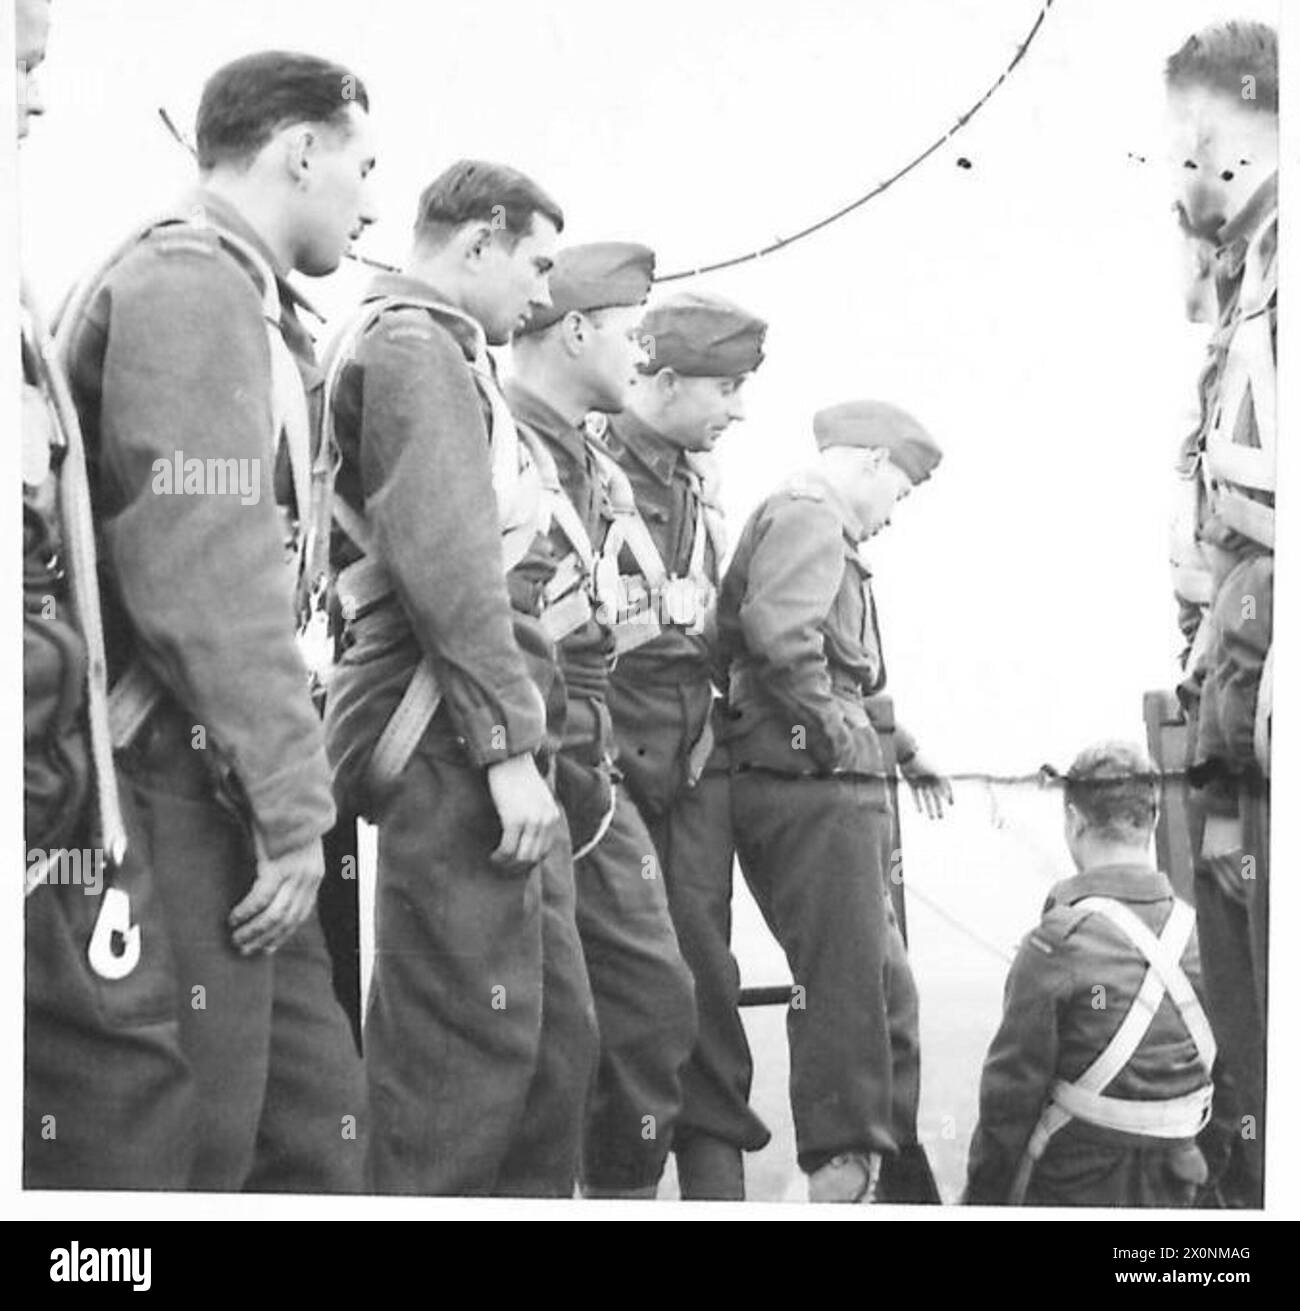 DIE POLNISCHE ARMEE IN GROSSBRITANNIEN, 1940-1947: Fallschirmjäger, die in einer Warteschlange stehen, um auf den Fallschirmturm zu springen. Beachten Sie den vollständig gestreckten Fallschirm über ihren Köpfen. Foto aufgenommen in Elie (oder Lundin Links), Fifeshire. Eine Demonstration des Trainings der 4. Cadre Rifle Brigade (zukünftige 1. Polnische unabhängige Fallschirmbrigade), gefolgt von einer Übung, bei der vollständig ausgebildete Fallschirmjäger eingesetzt wurden, wurde von General Władysław Sikorski, dem C-in-C der polnischen Streitkräfte, beobachtet. Der erste Kurs der Schulung ist das Lernen der richtigen Landeweise. Dies wird mittels tr gelehrt Stockfoto